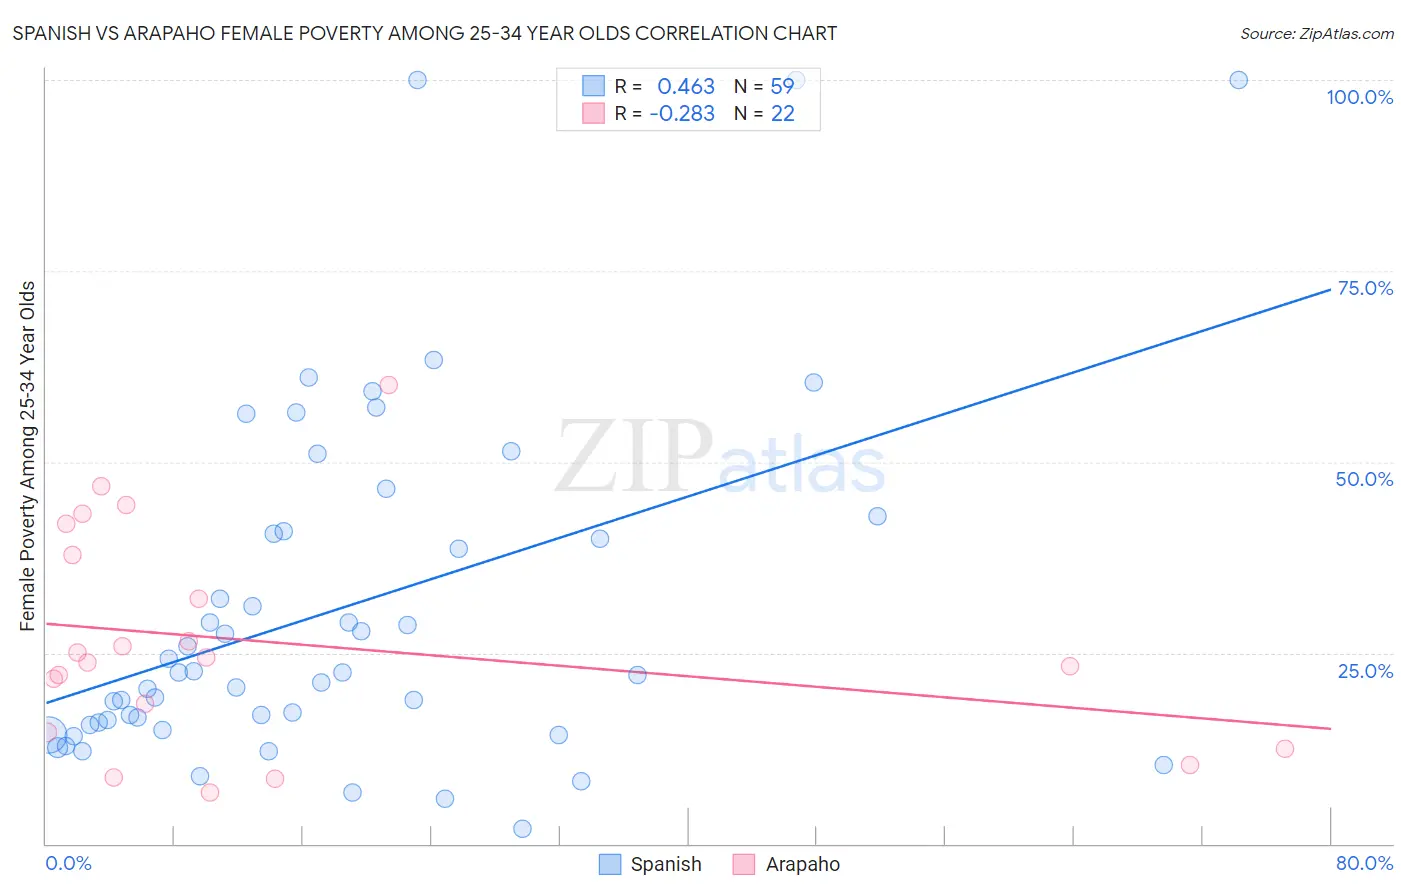 Spanish vs Arapaho Female Poverty Among 25-34 Year Olds